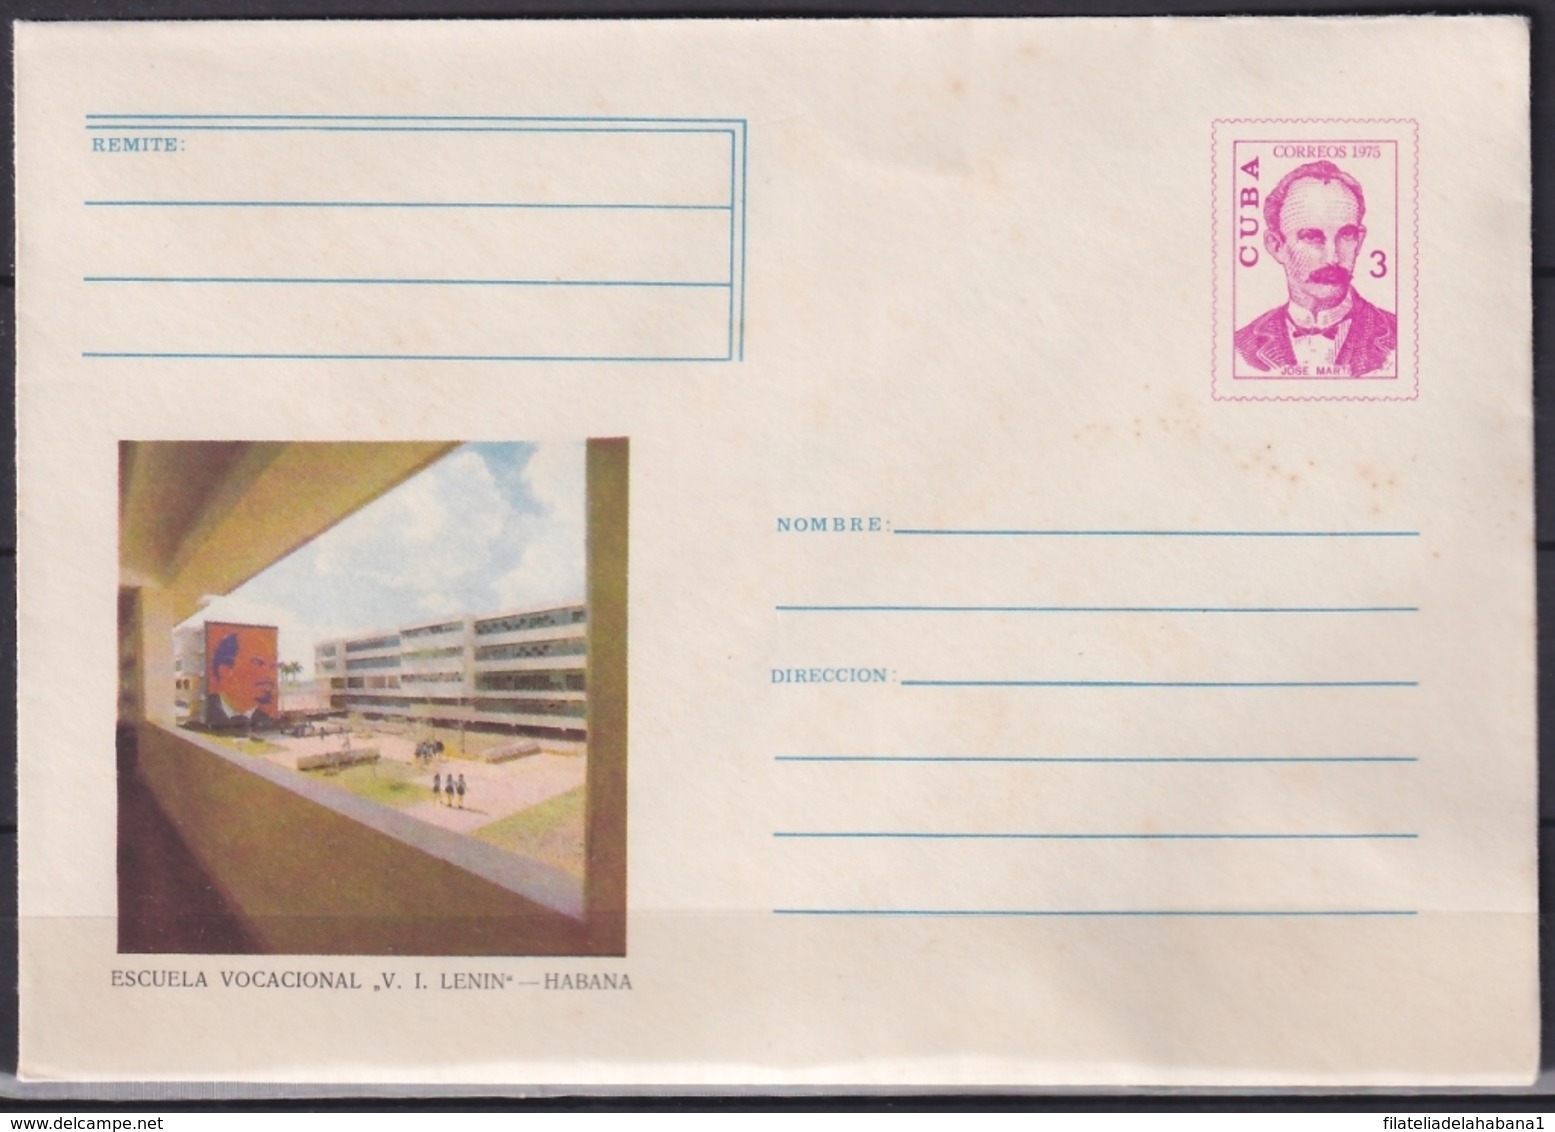 1975-EP-113 CUBA 1975 3c POSTAL STATIONERY COVER. HAVANA, ESCUELA VOCACIONAL LENIN. MANCHAS. - Briefe U. Dokumente